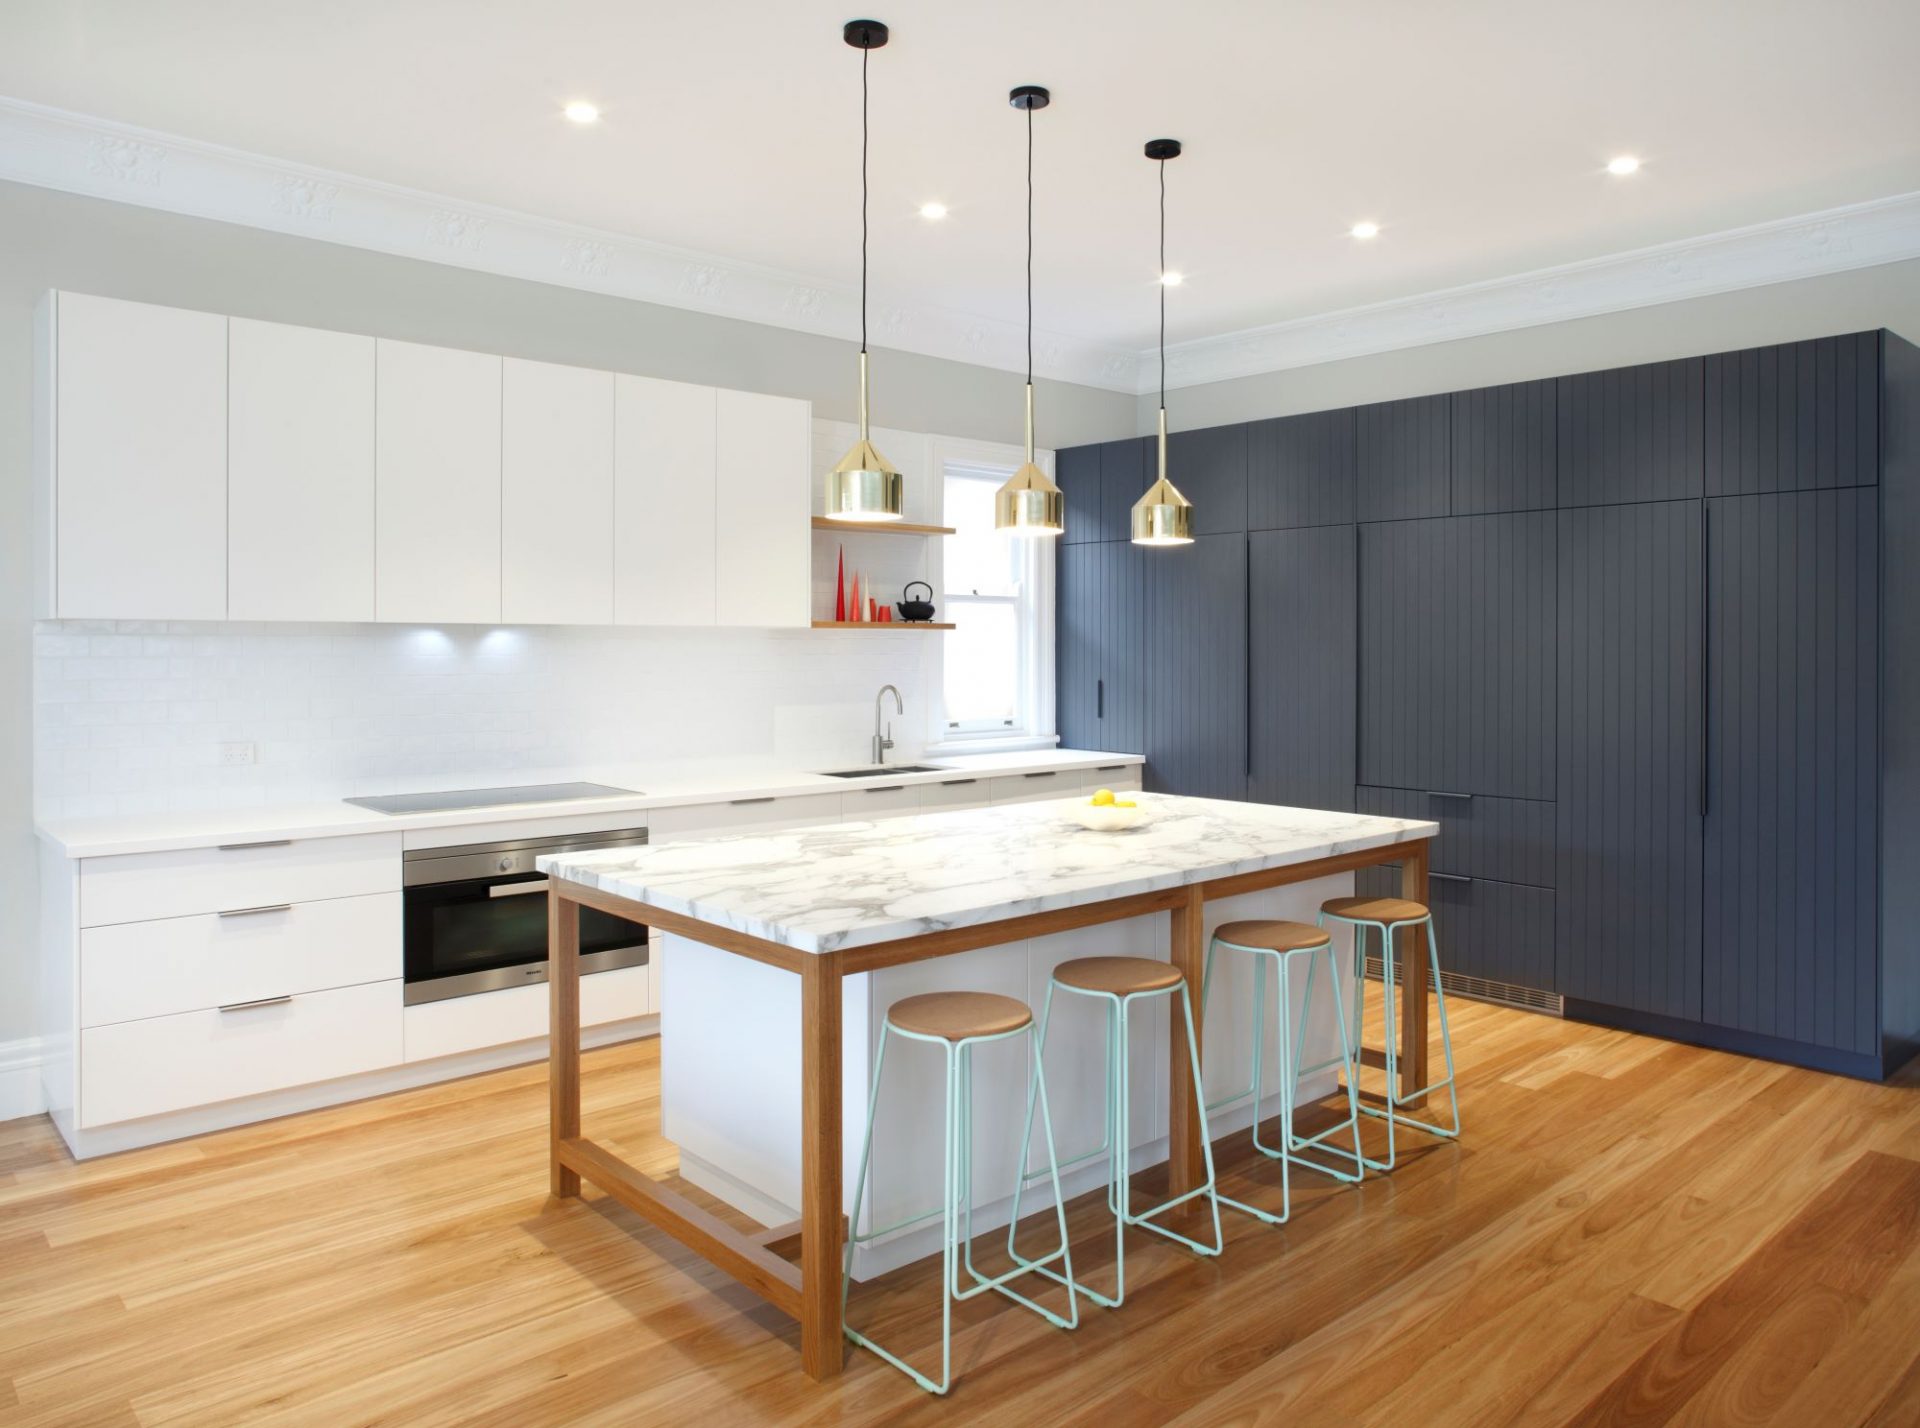 Kitchen Layout Design Tips